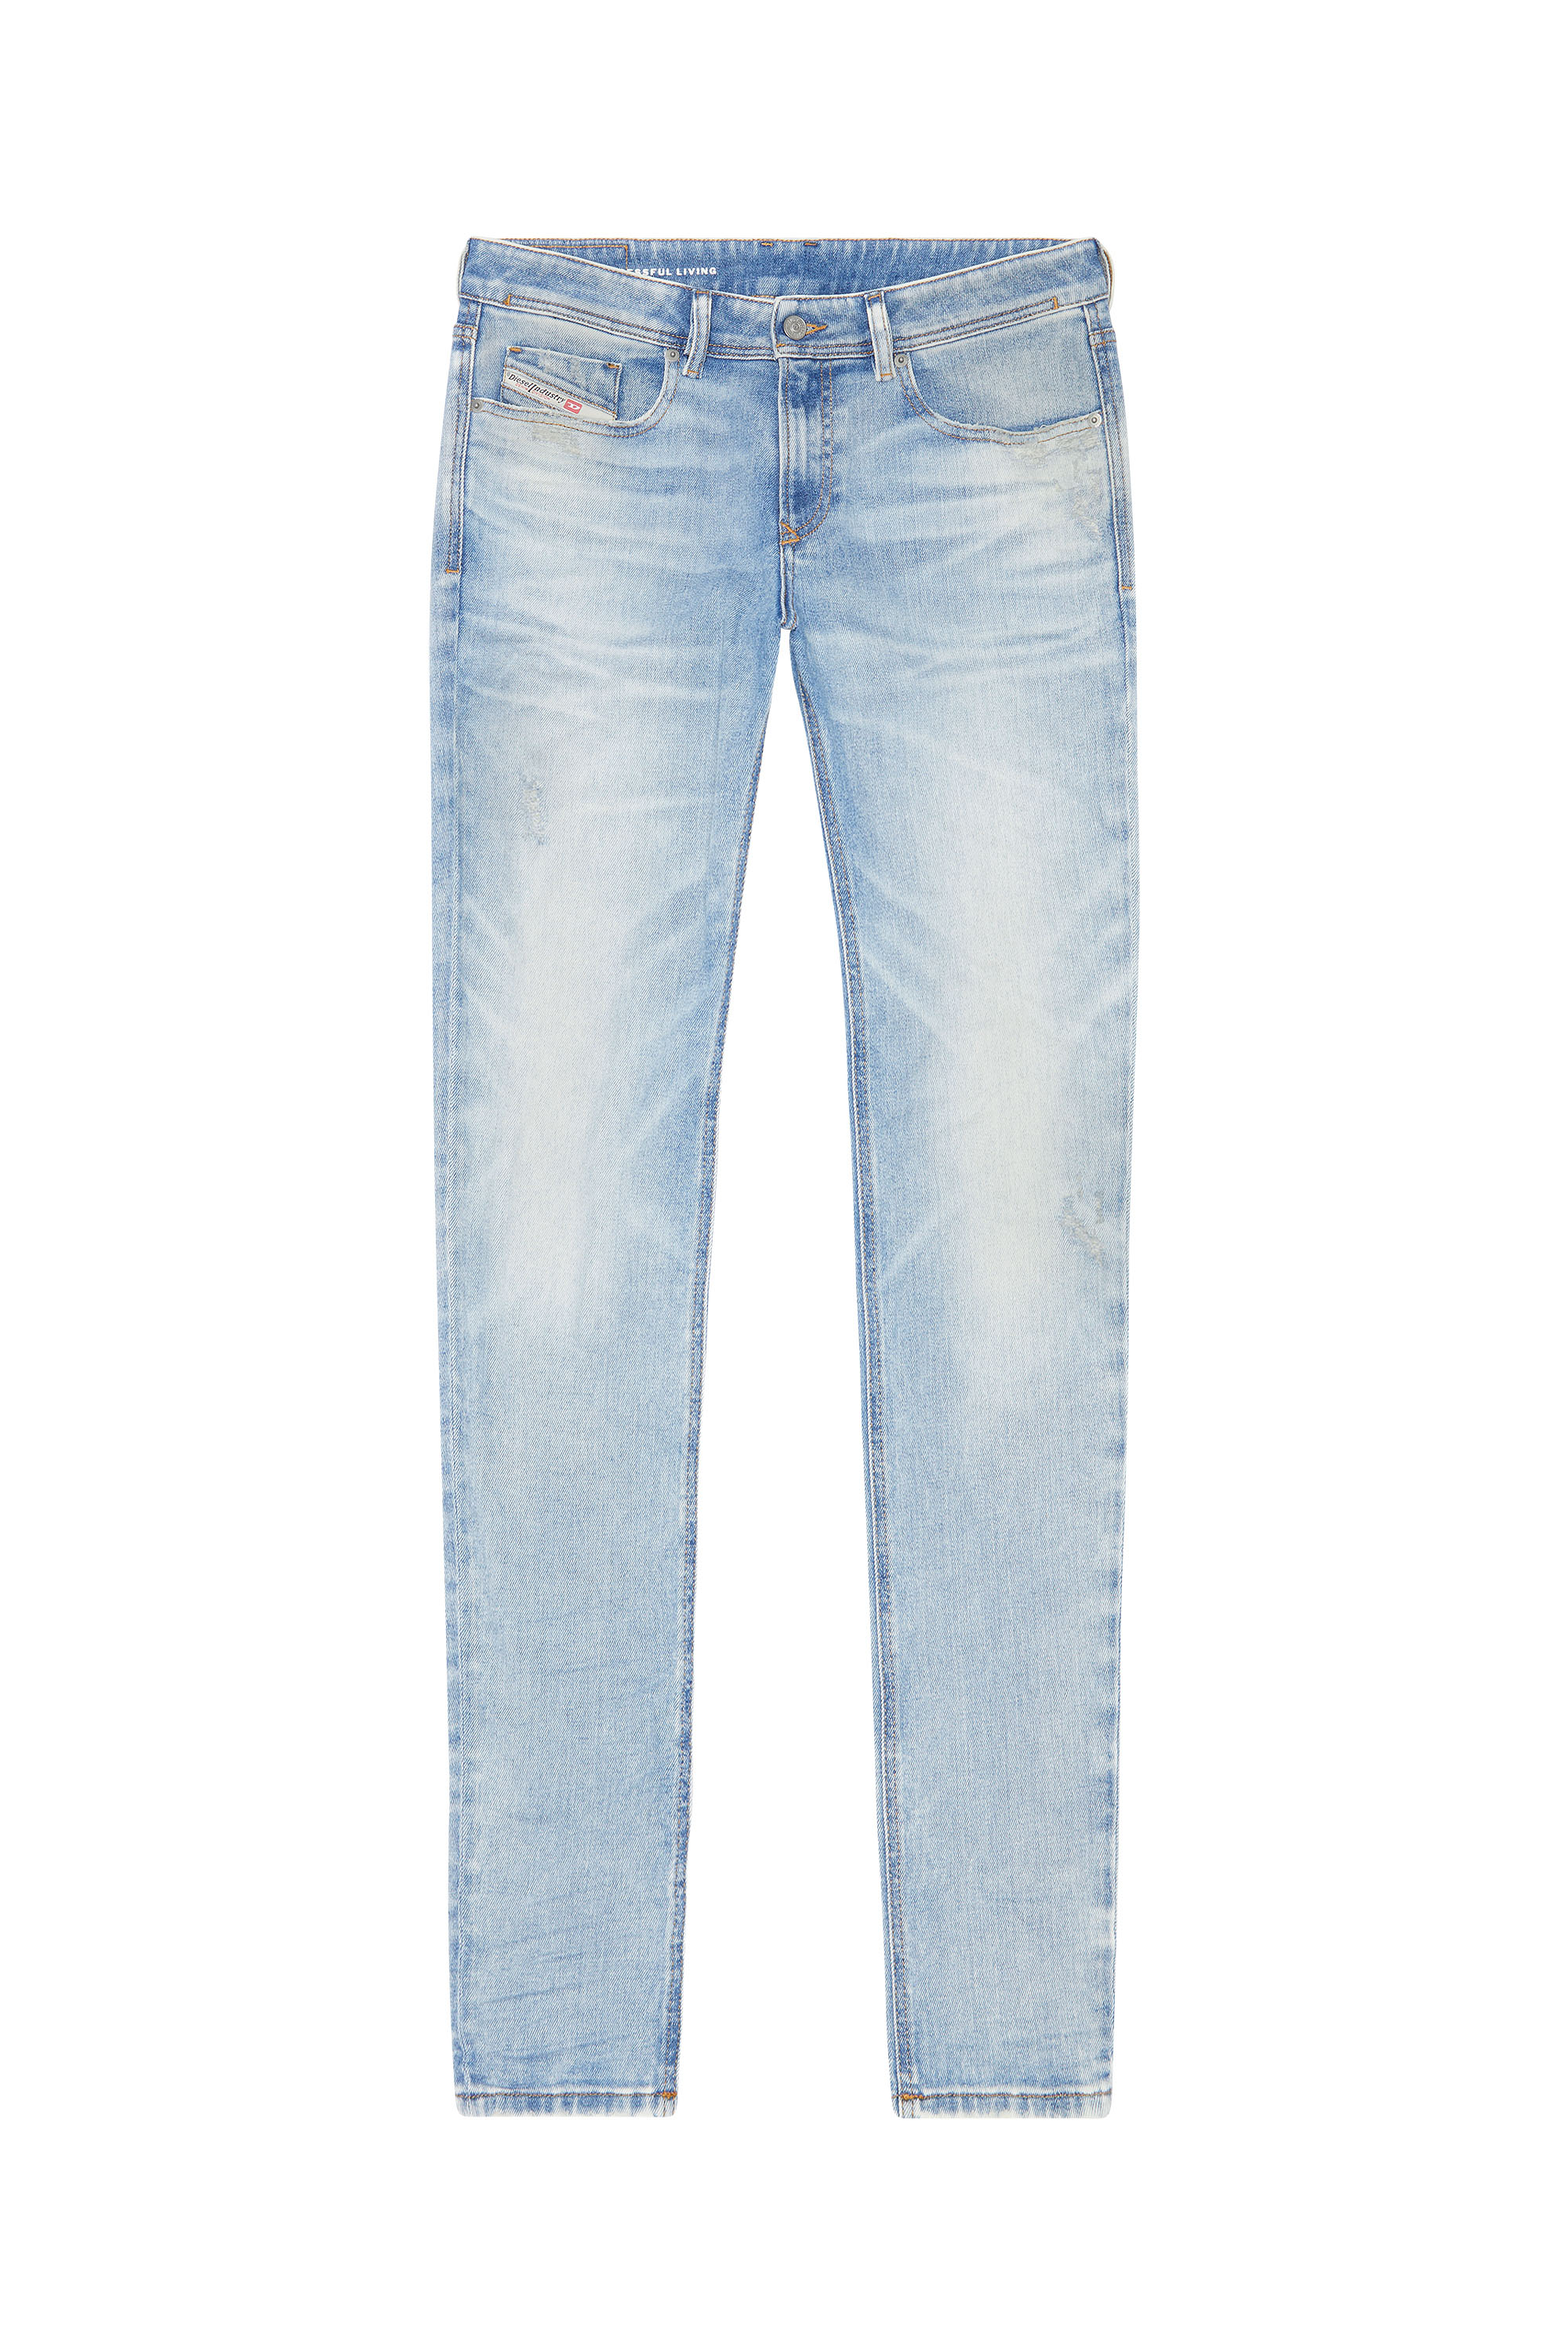 Diesel - Skinny Jeans 1979 Sleenker 09G39, Light Blue - Image 5